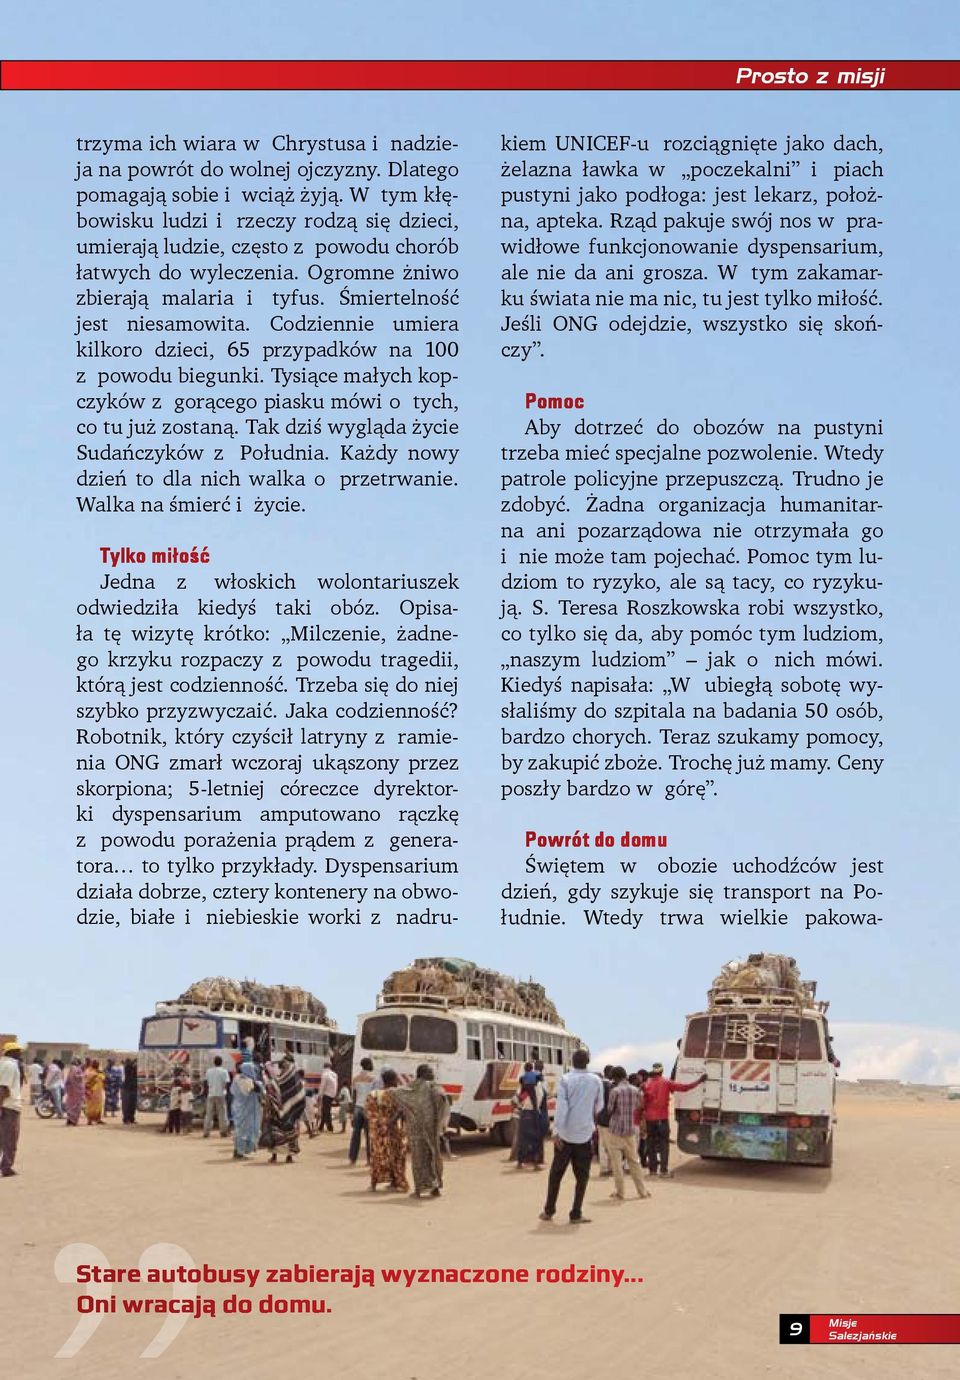 Codziennie umiera kilkoro dzieci, 65 przypadków na 100 z powodu biegunki. Tysiące małych kopczyków z gorącego piasku mówi o tych, co tu już zostaną. Tak dziś wygląda życie Sudańczyków z Południa.